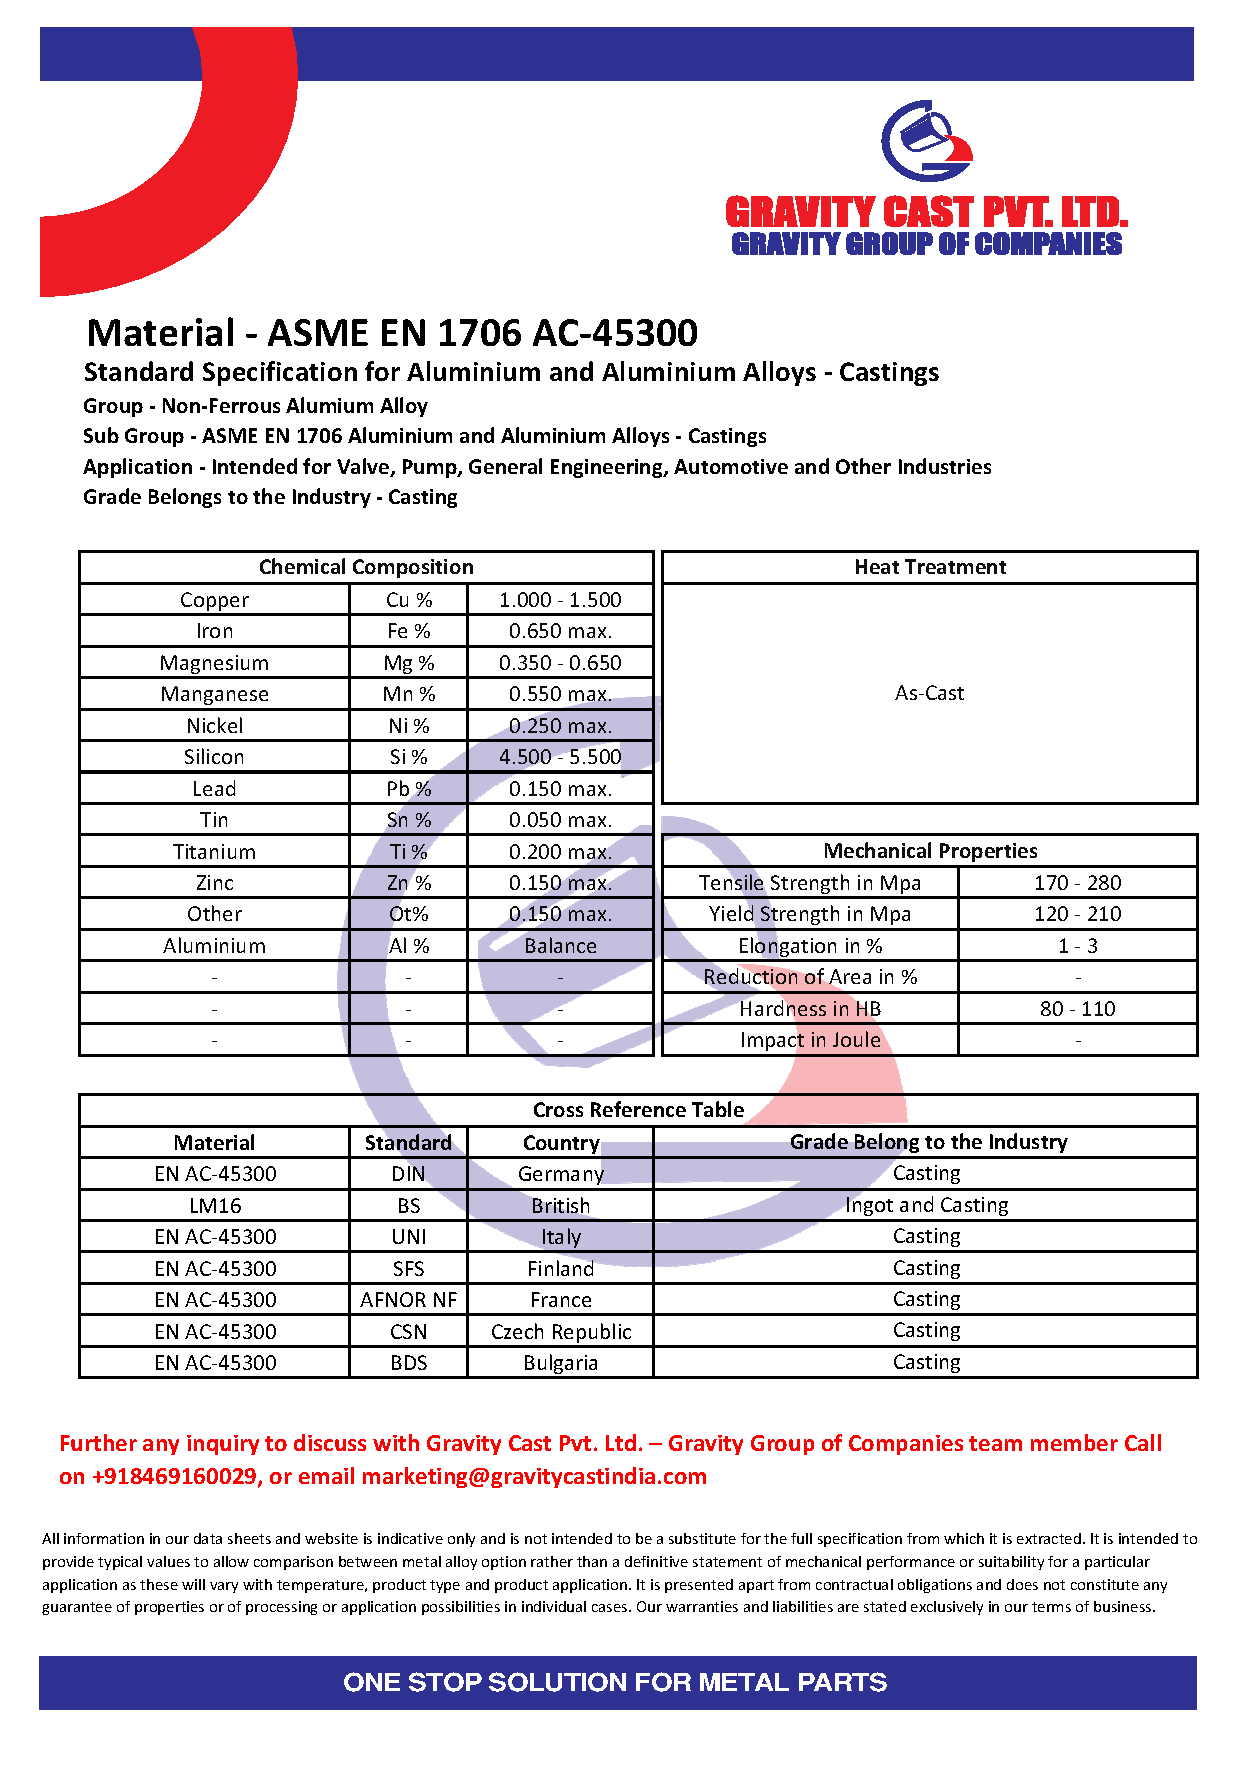 ASME EN 1706 AC-45300.pdf